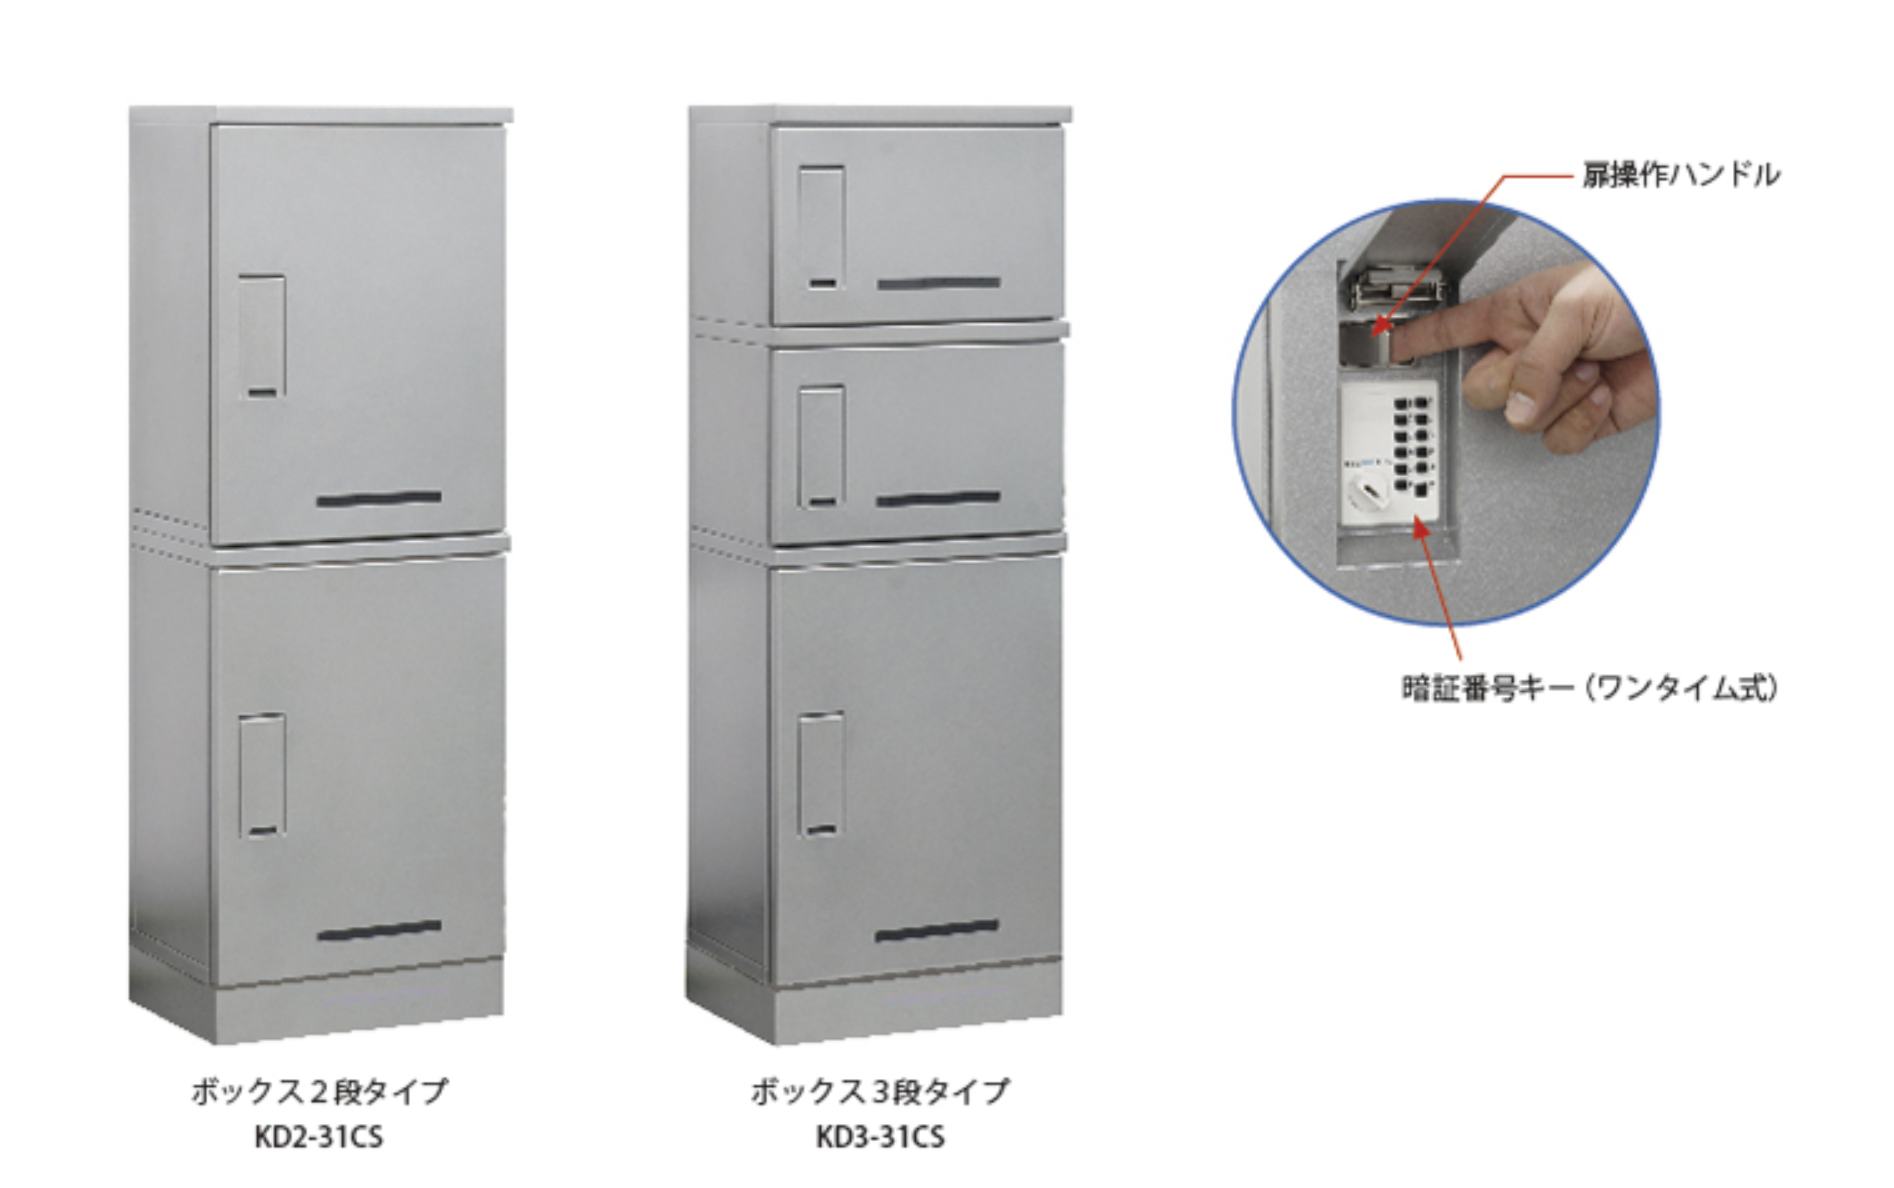 【河村電器産業】“ 電気設備を守ってきた技術” でつくった宅配ボックス 『集合住宅用 宅配ボックス RusuPo SHARE』の画像